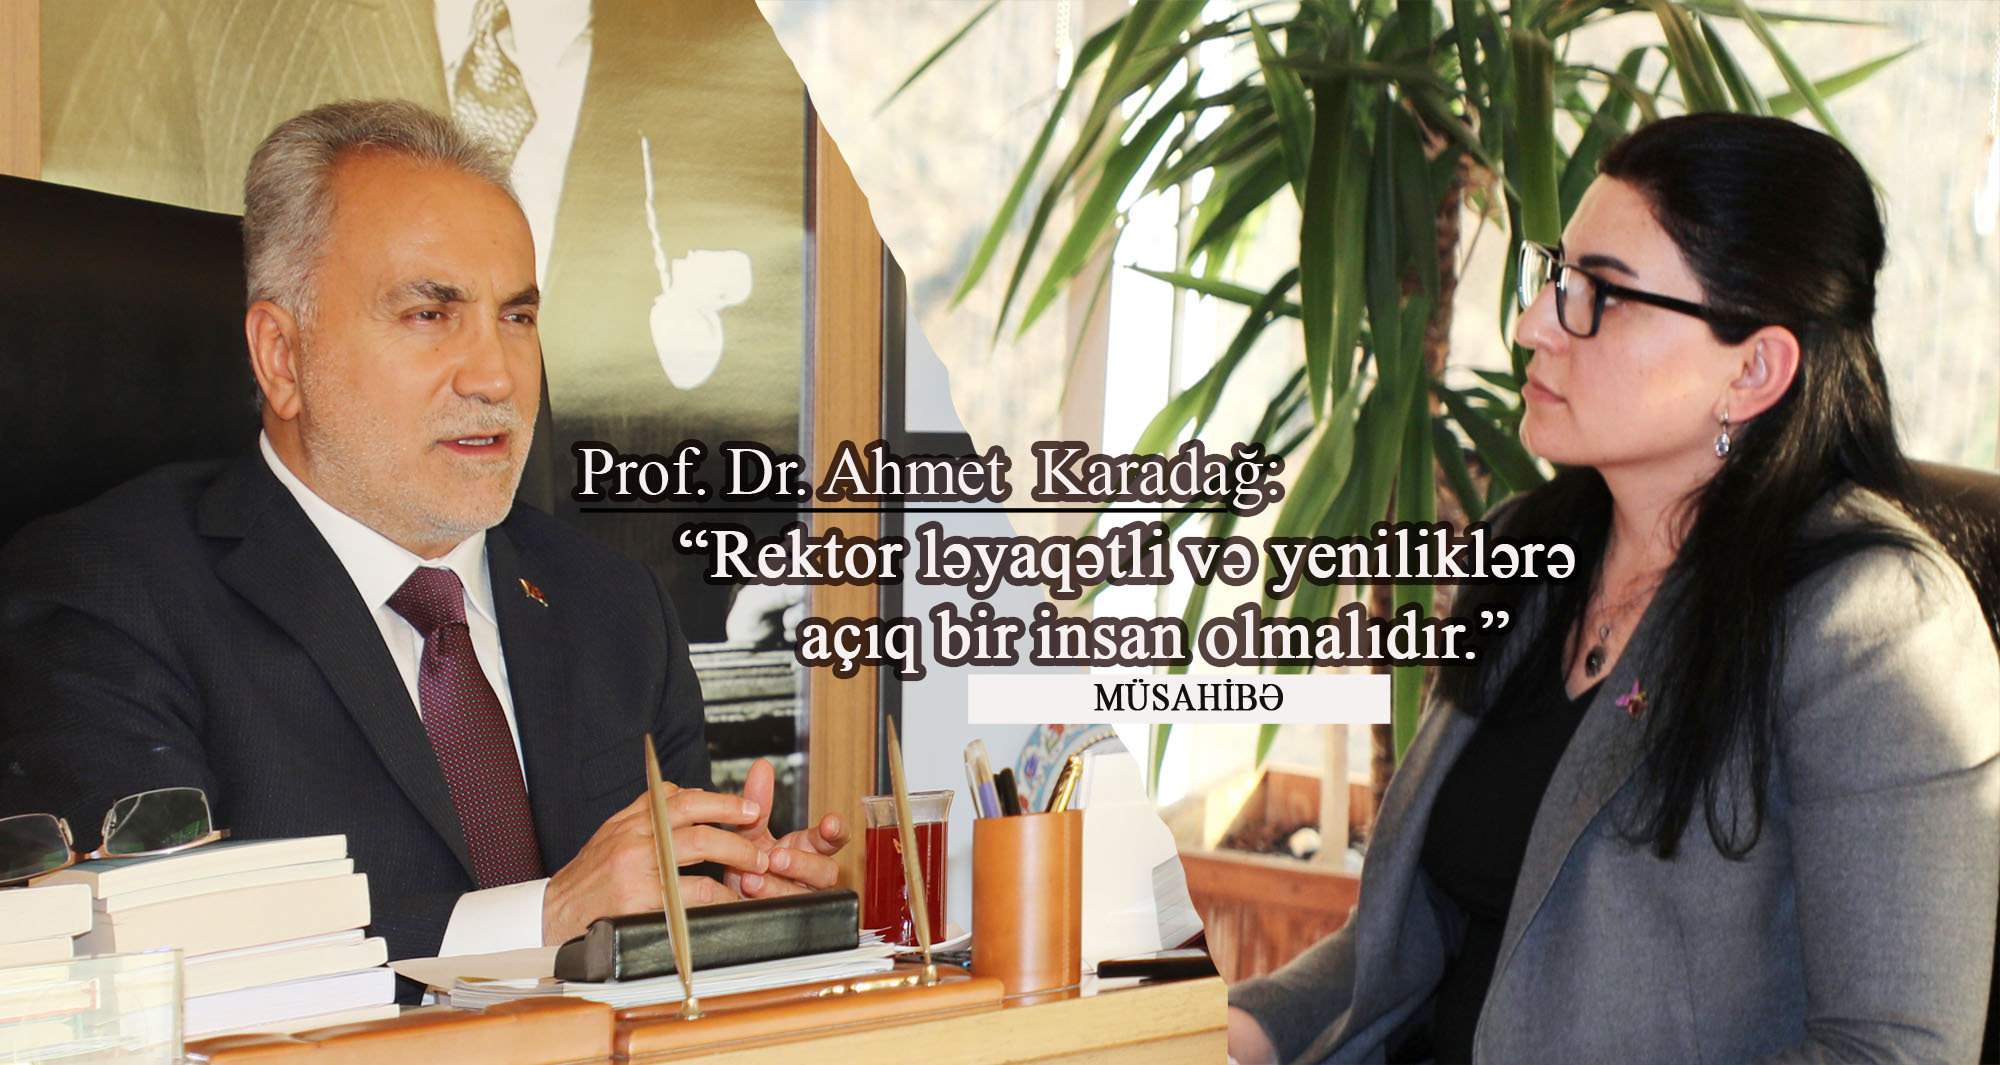 Prof. Dr. Ahmet Karadağ: “Rektor ləyaqətli və yeniliklərə açıq bir insan olmalıdır...” - MÜSAHİBƏ